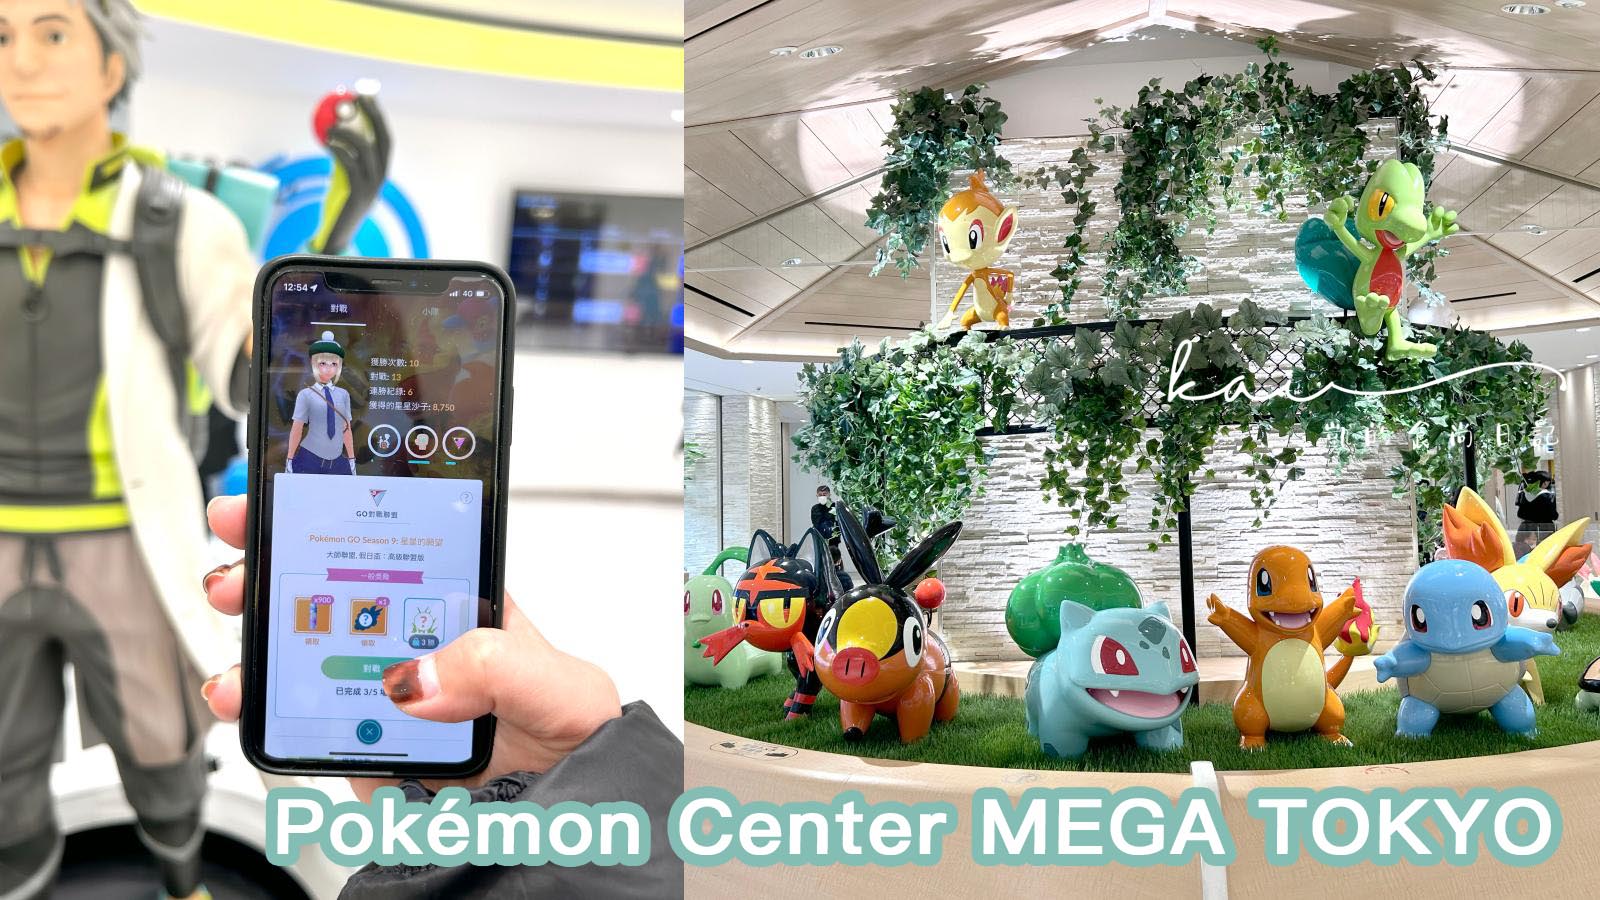 延伸閱讀：☆【最大寶可夢中心】池袋Pokémon Center MEGA TOKYO。２大必逛重點：訓練師對戰基地、Pikachu Sweets